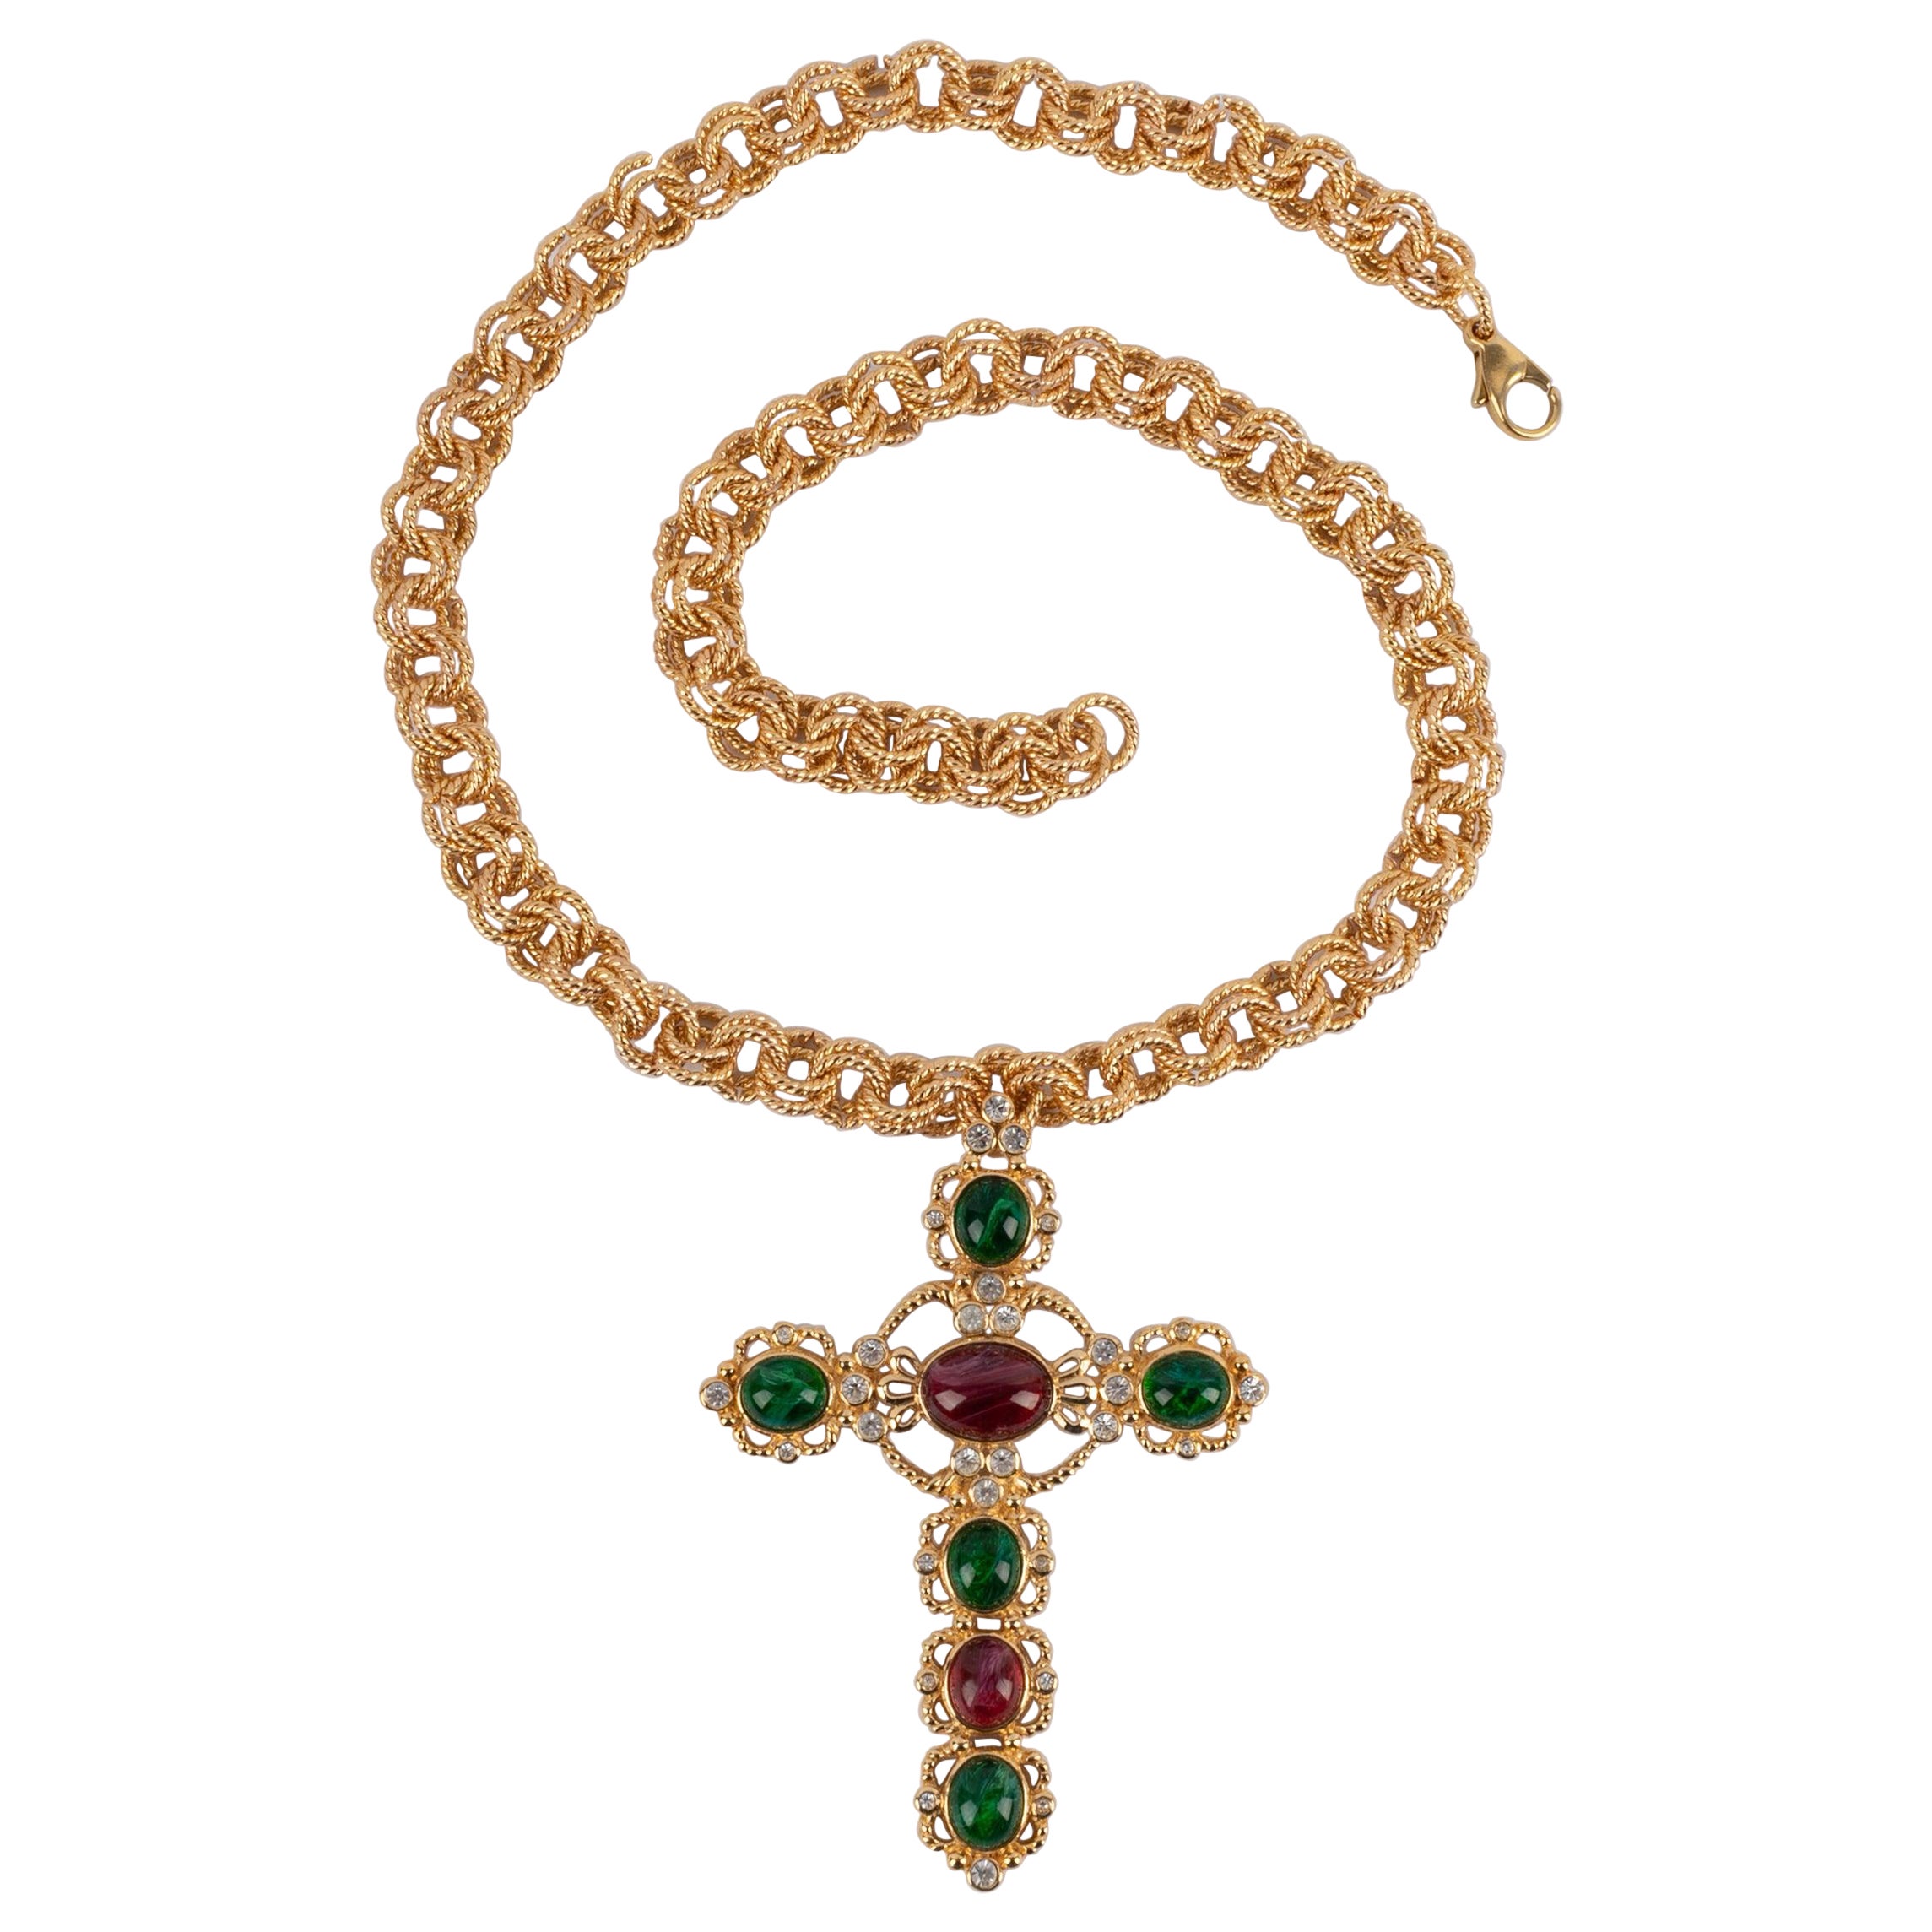 Christian Dior - Collier croix en métal doré